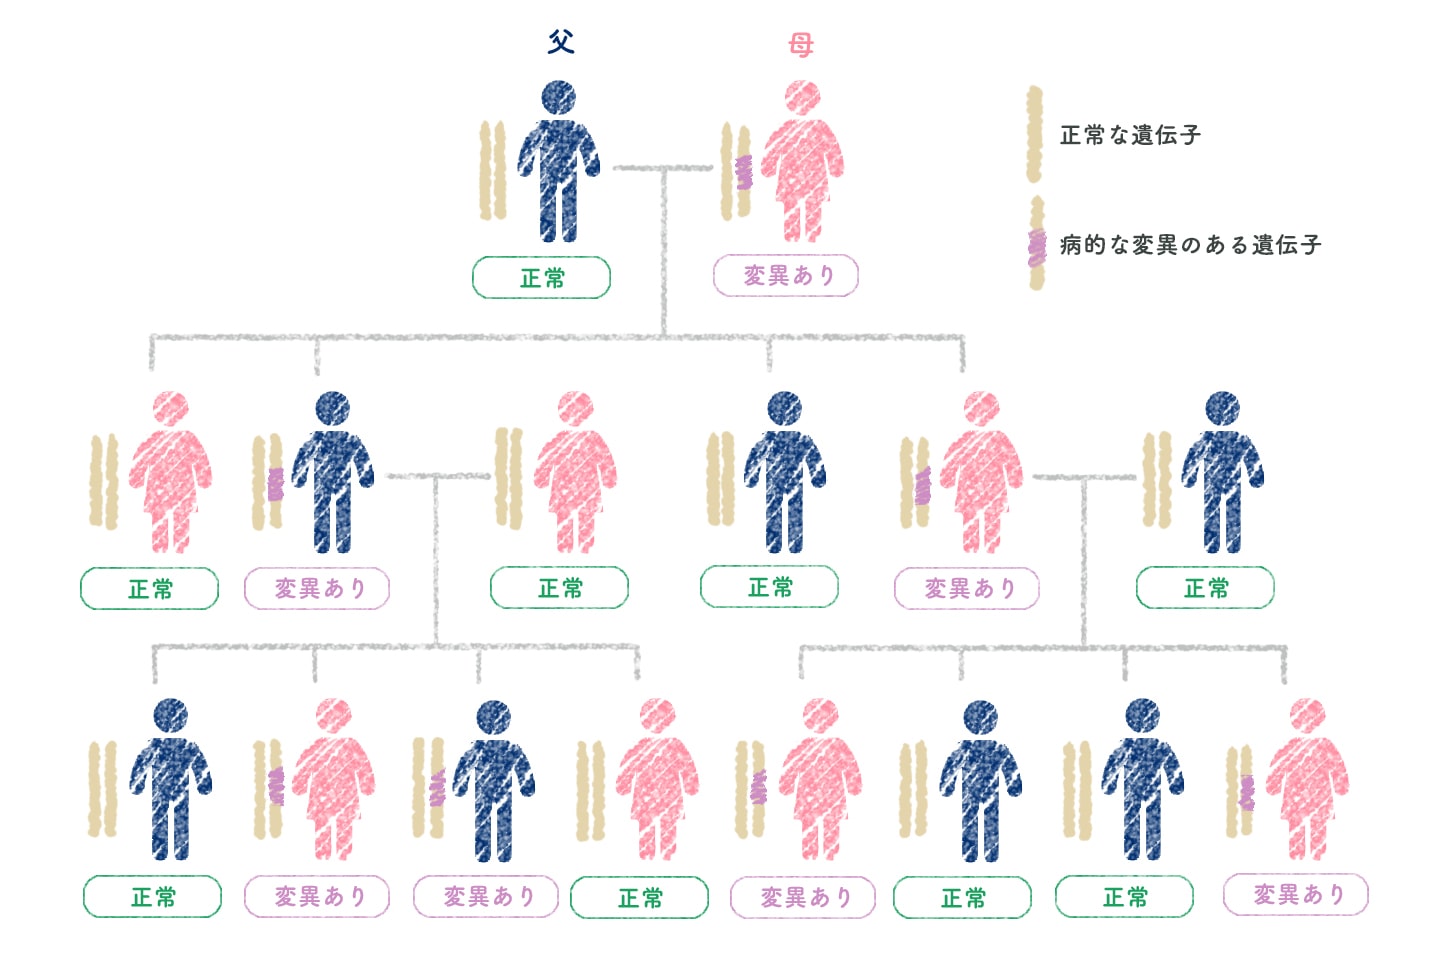 BRCA遺伝子の遺伝 | 遺伝性乳がん | 乳がん.jp